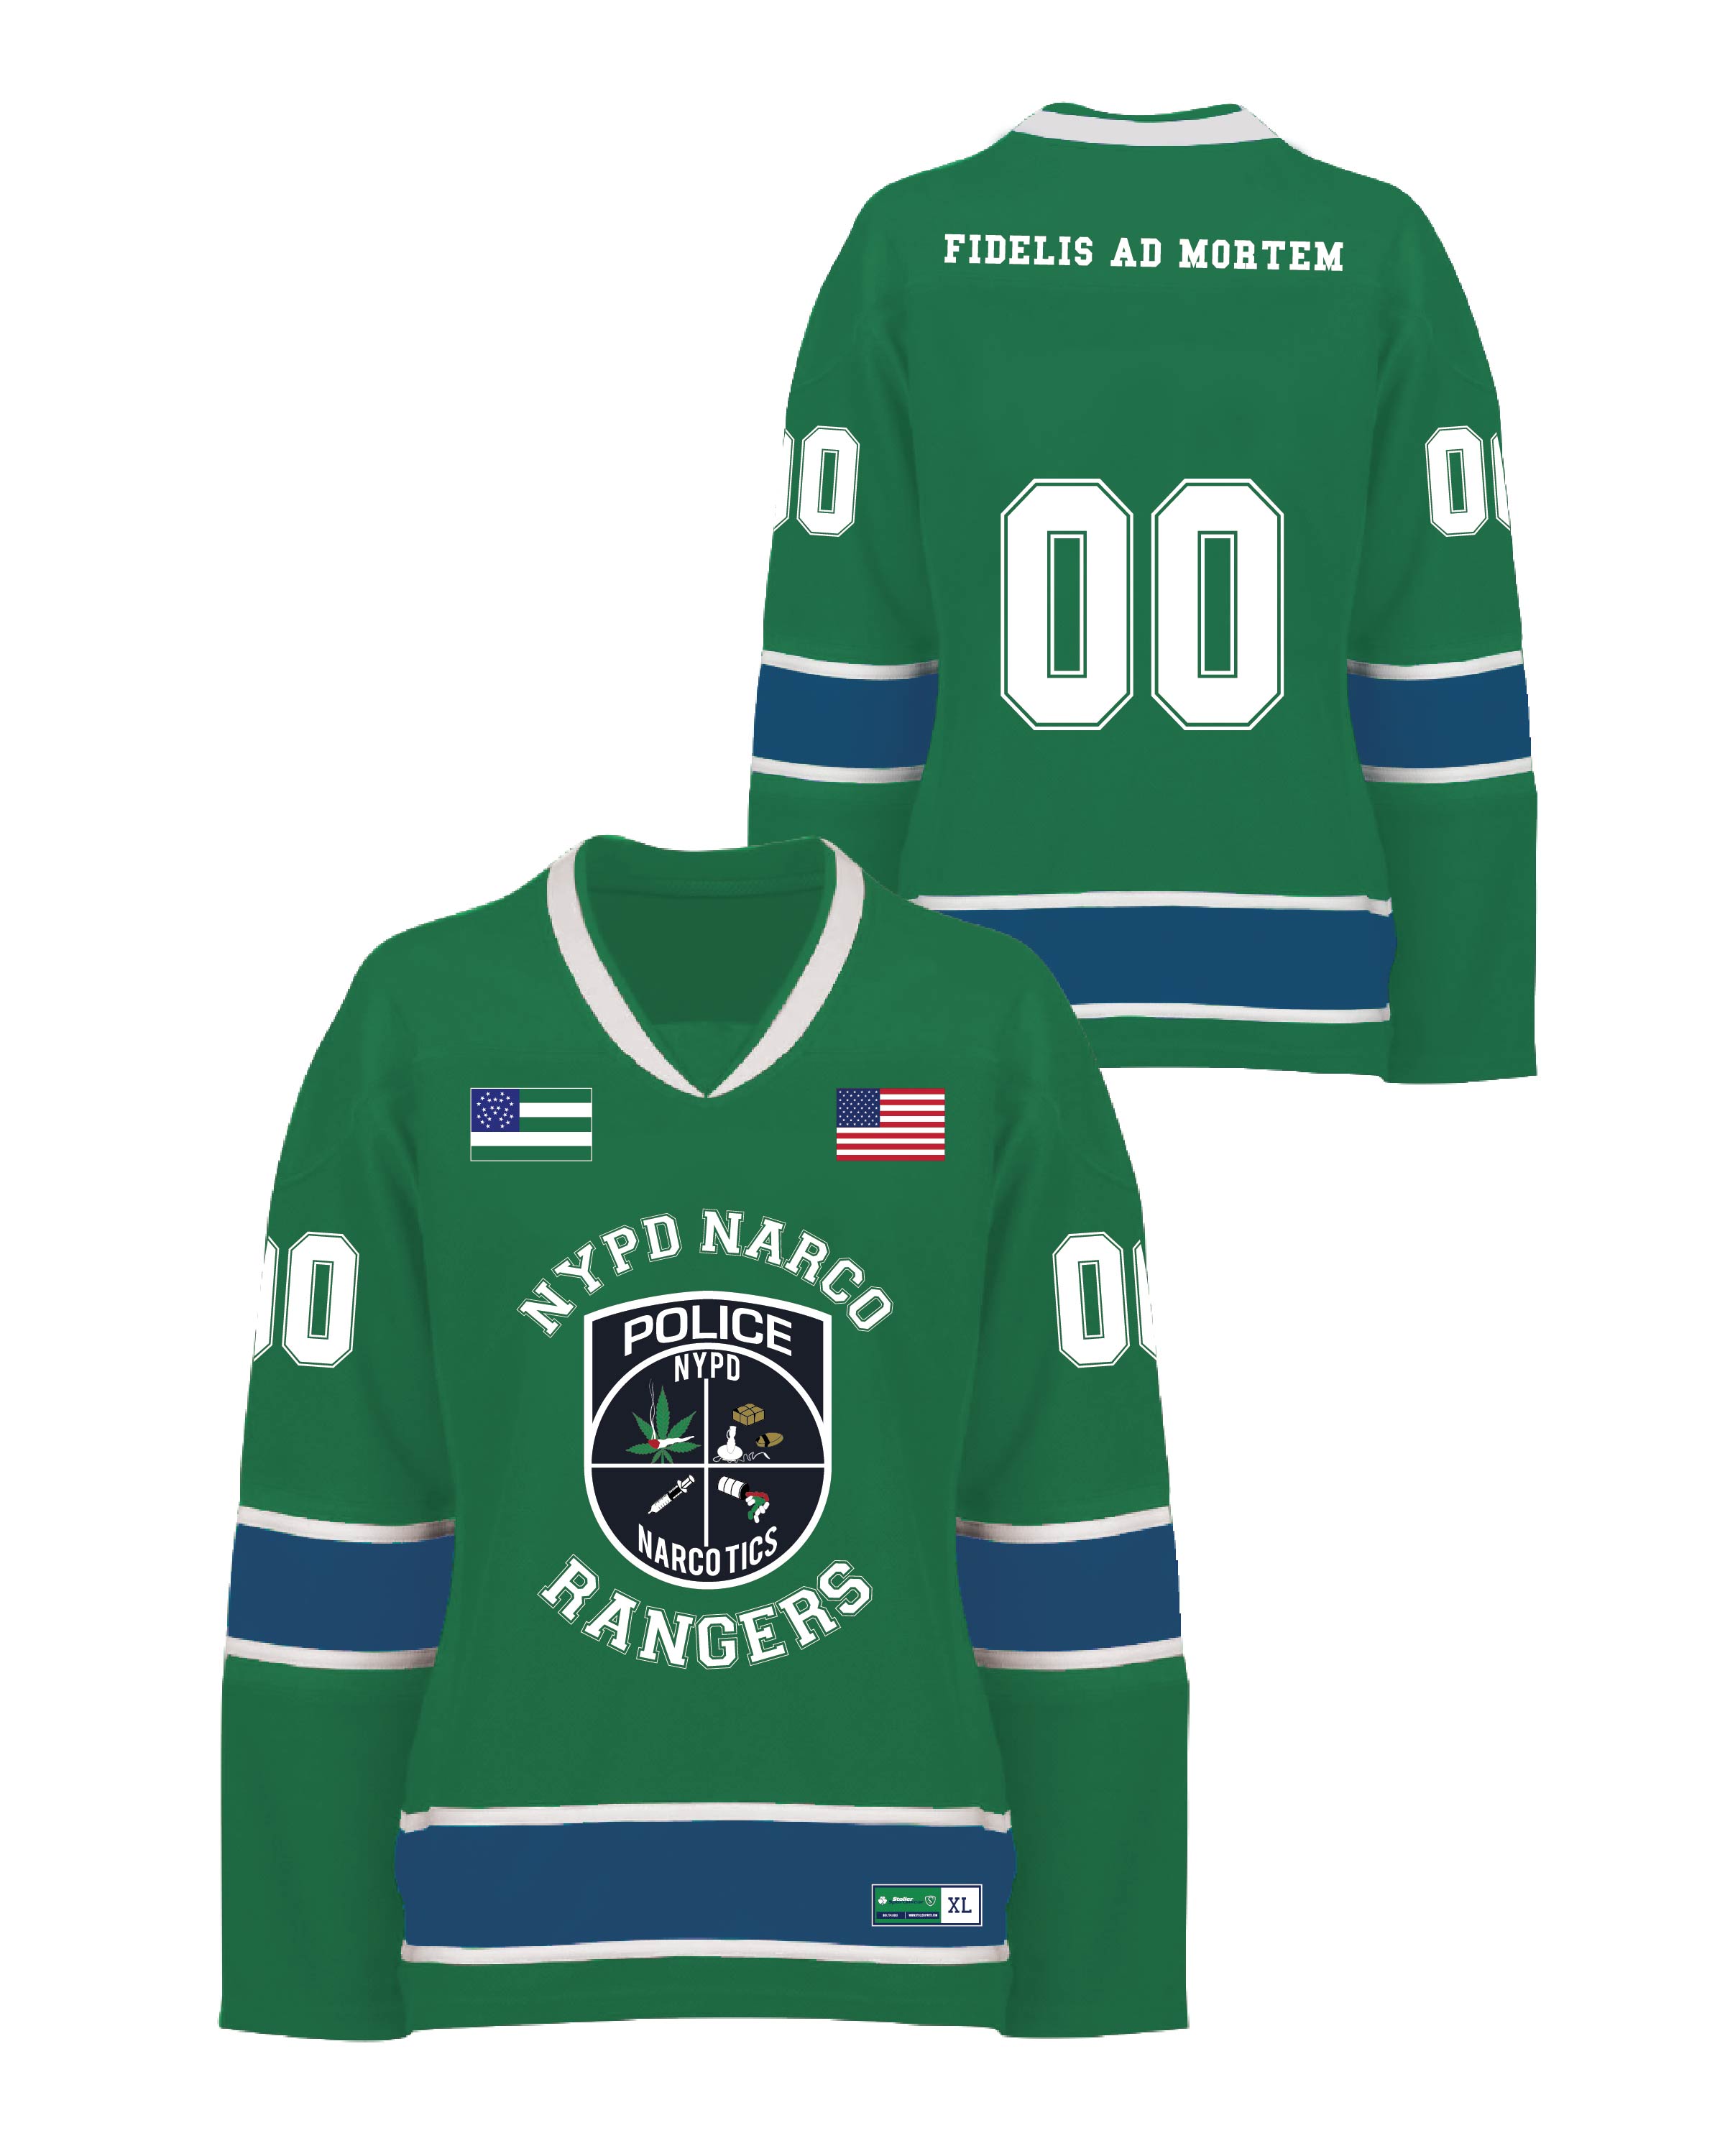 Custom Sublimated Hockey Uniform - Narcos